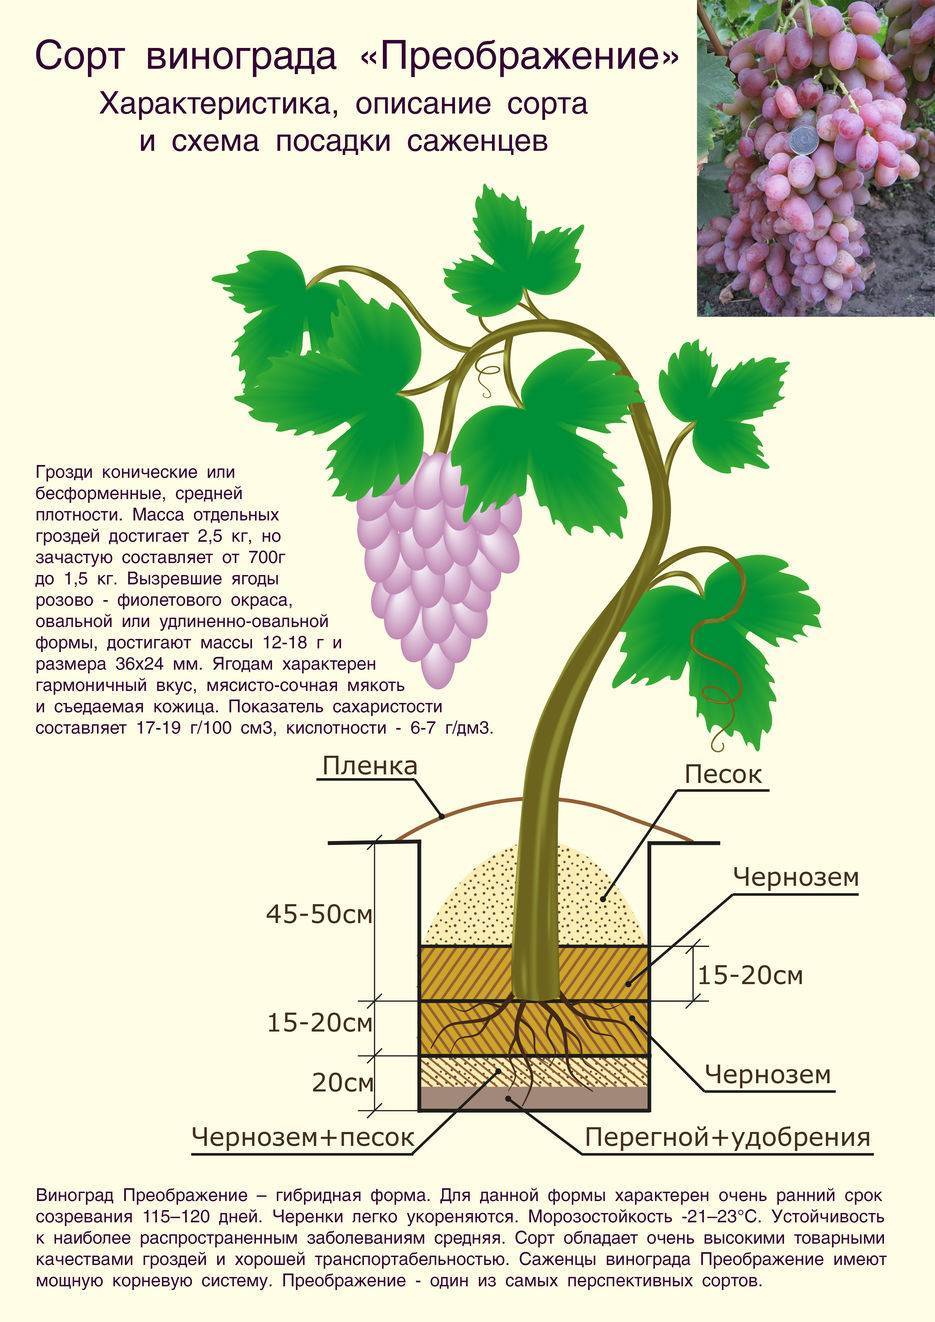 Сорт винограда монарх: описание и выращивание, уход, основные болезни и отзывы